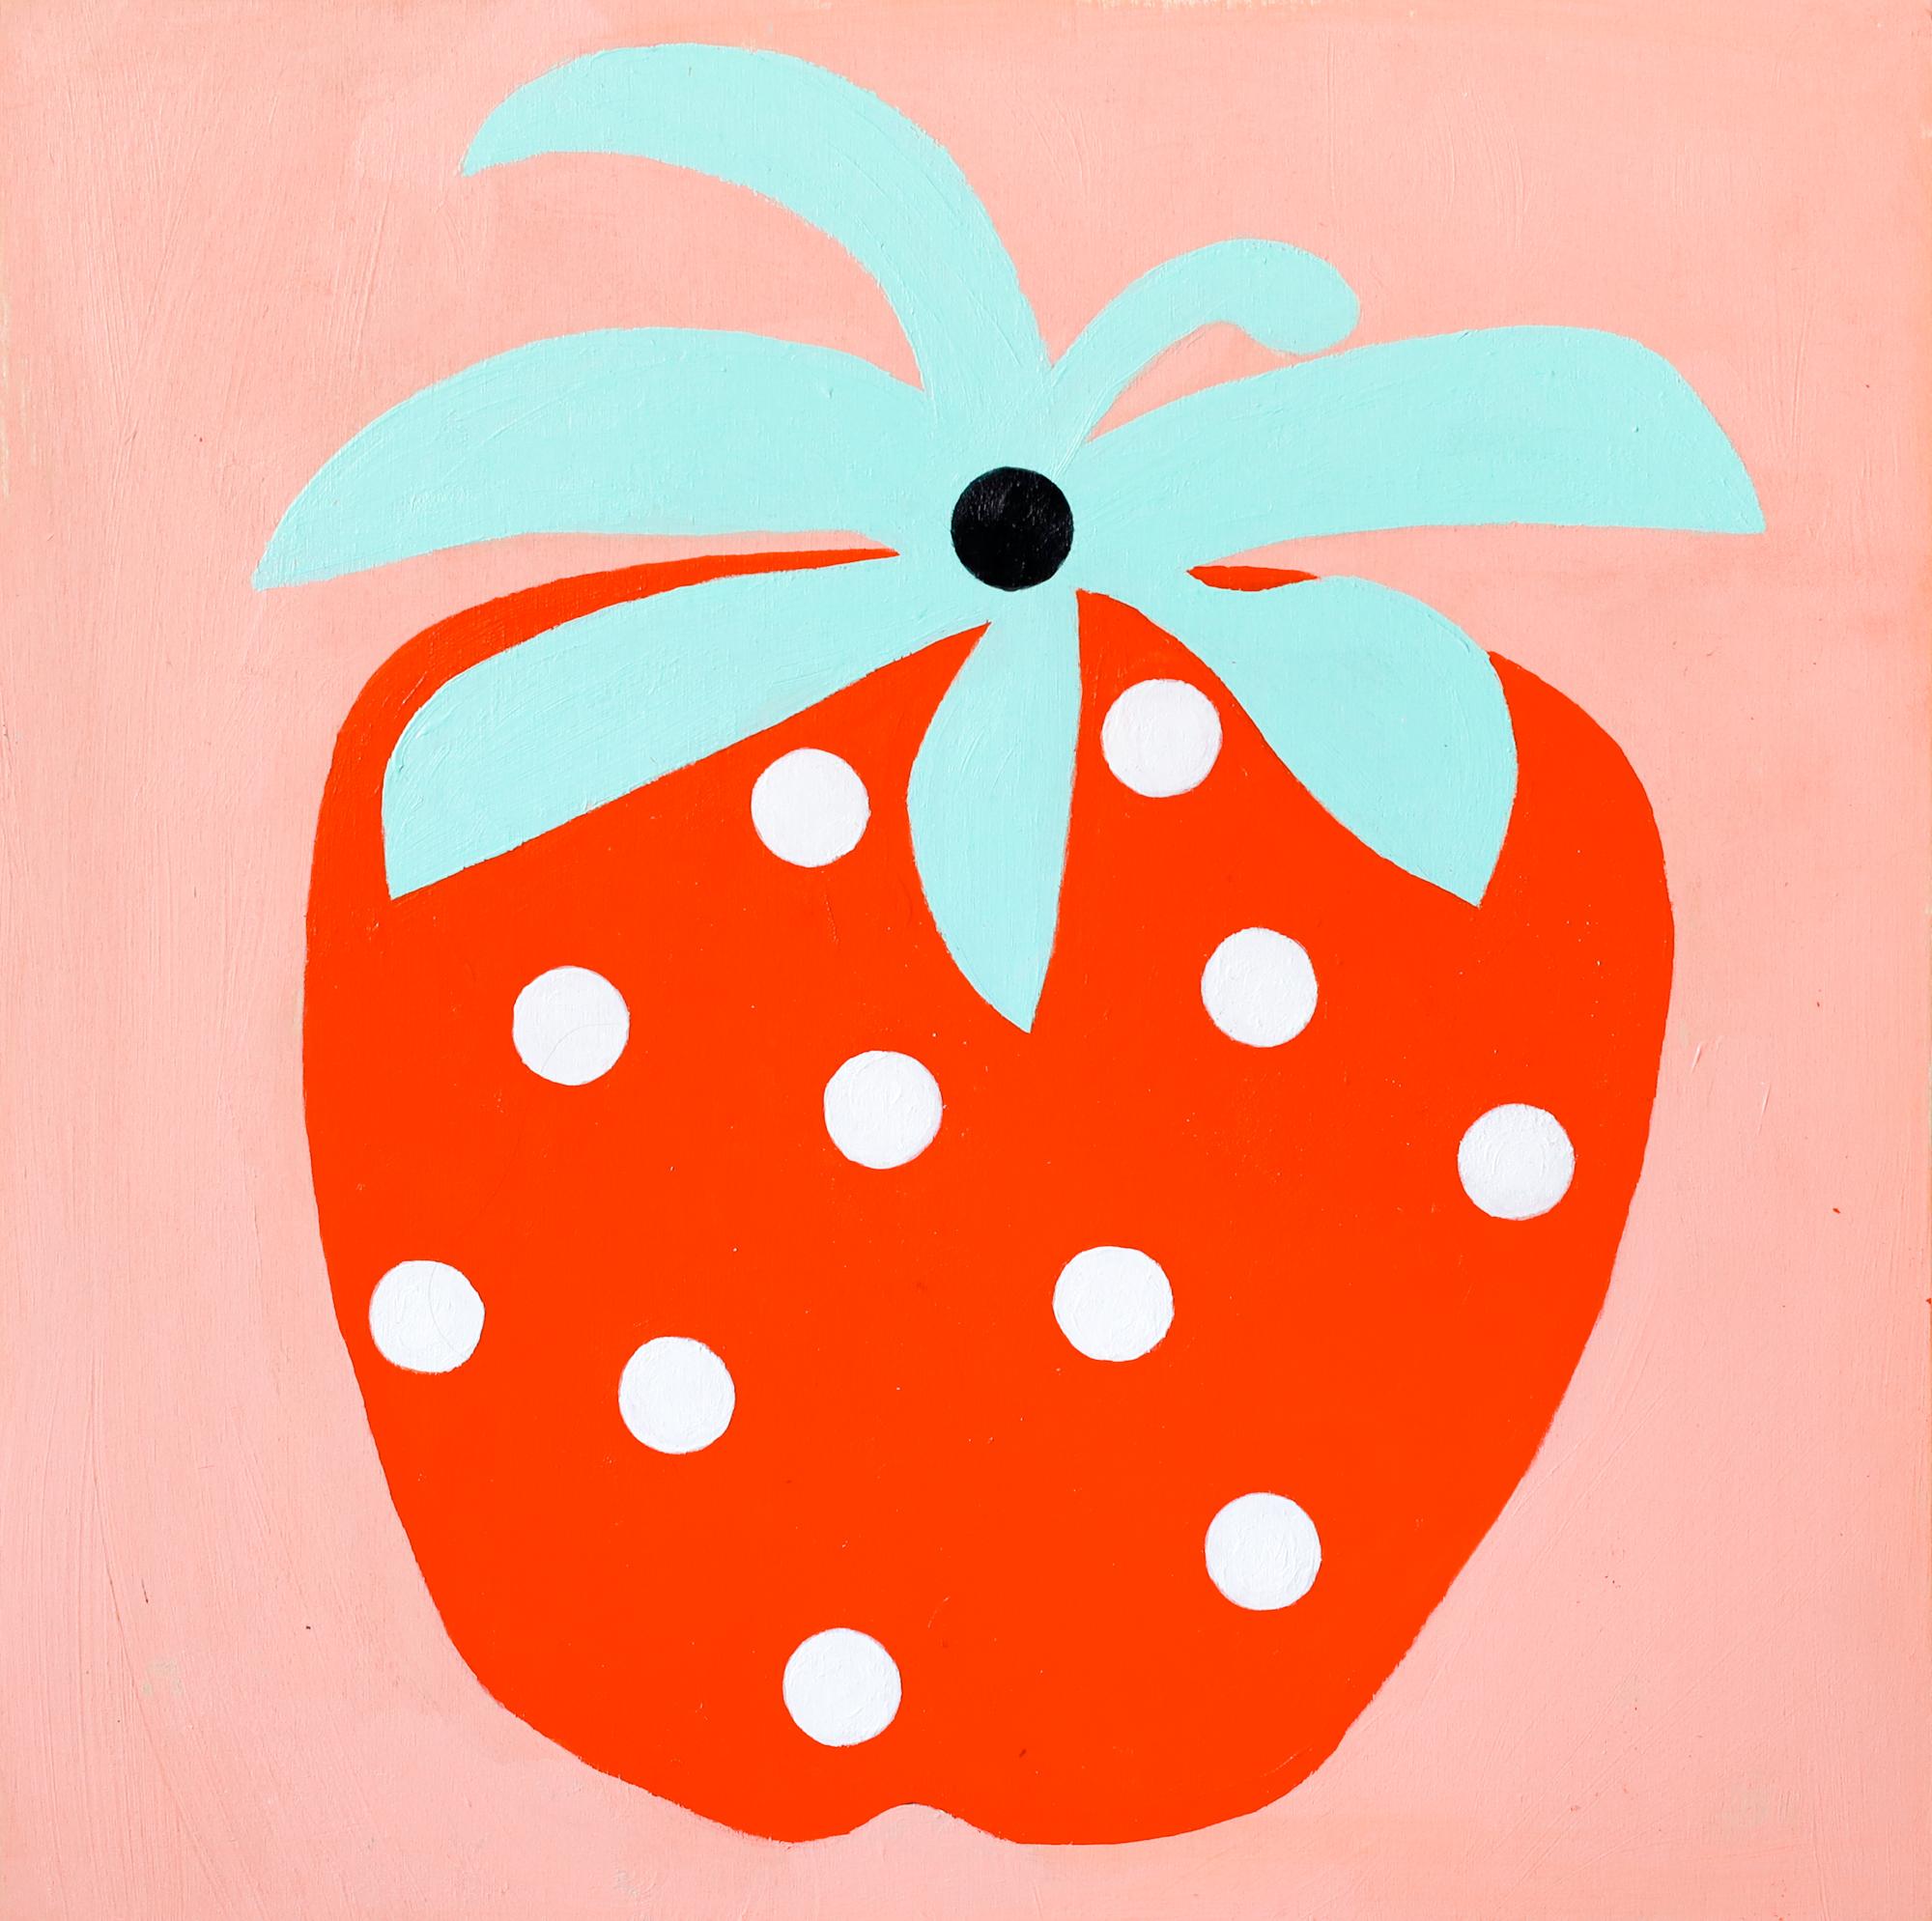 "Strawberry", Fruit Motif, Illustration, Acrylic on Wood - Art by Lisa Congdon